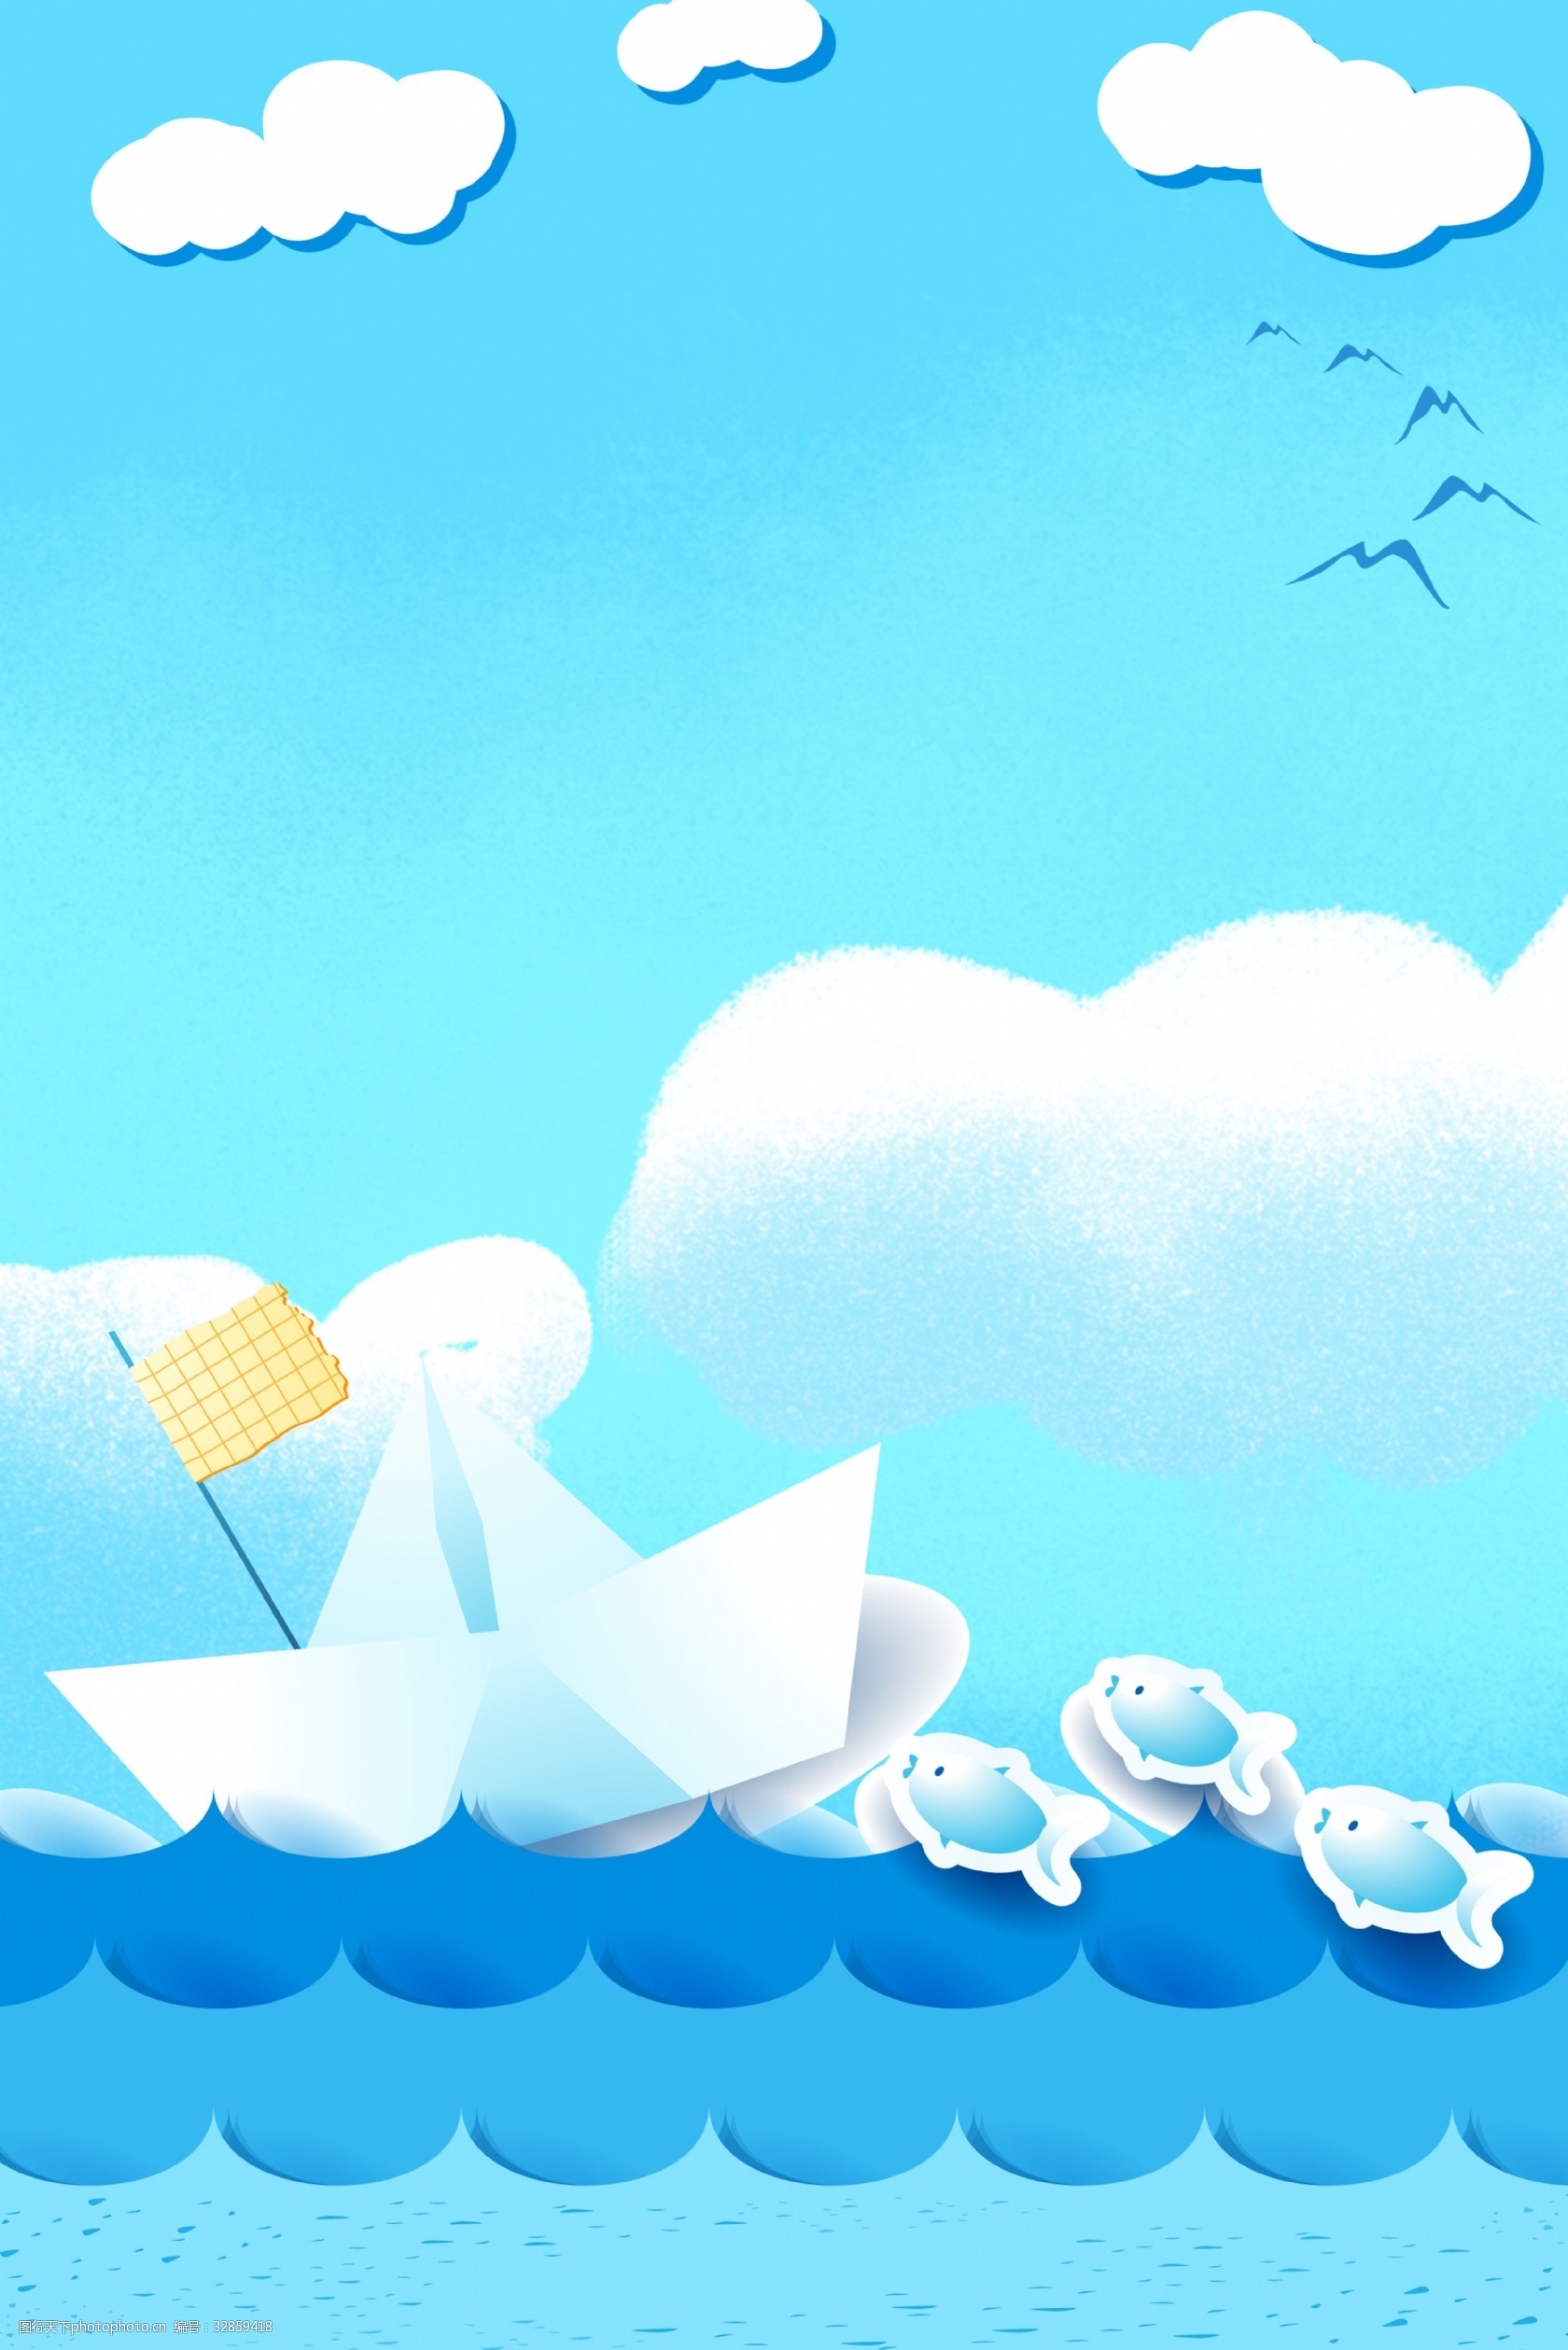 词:蓝色简约清新夏季旅游背景 夏季 旅游 蓝色 海浪 蓝天 白云 海燕